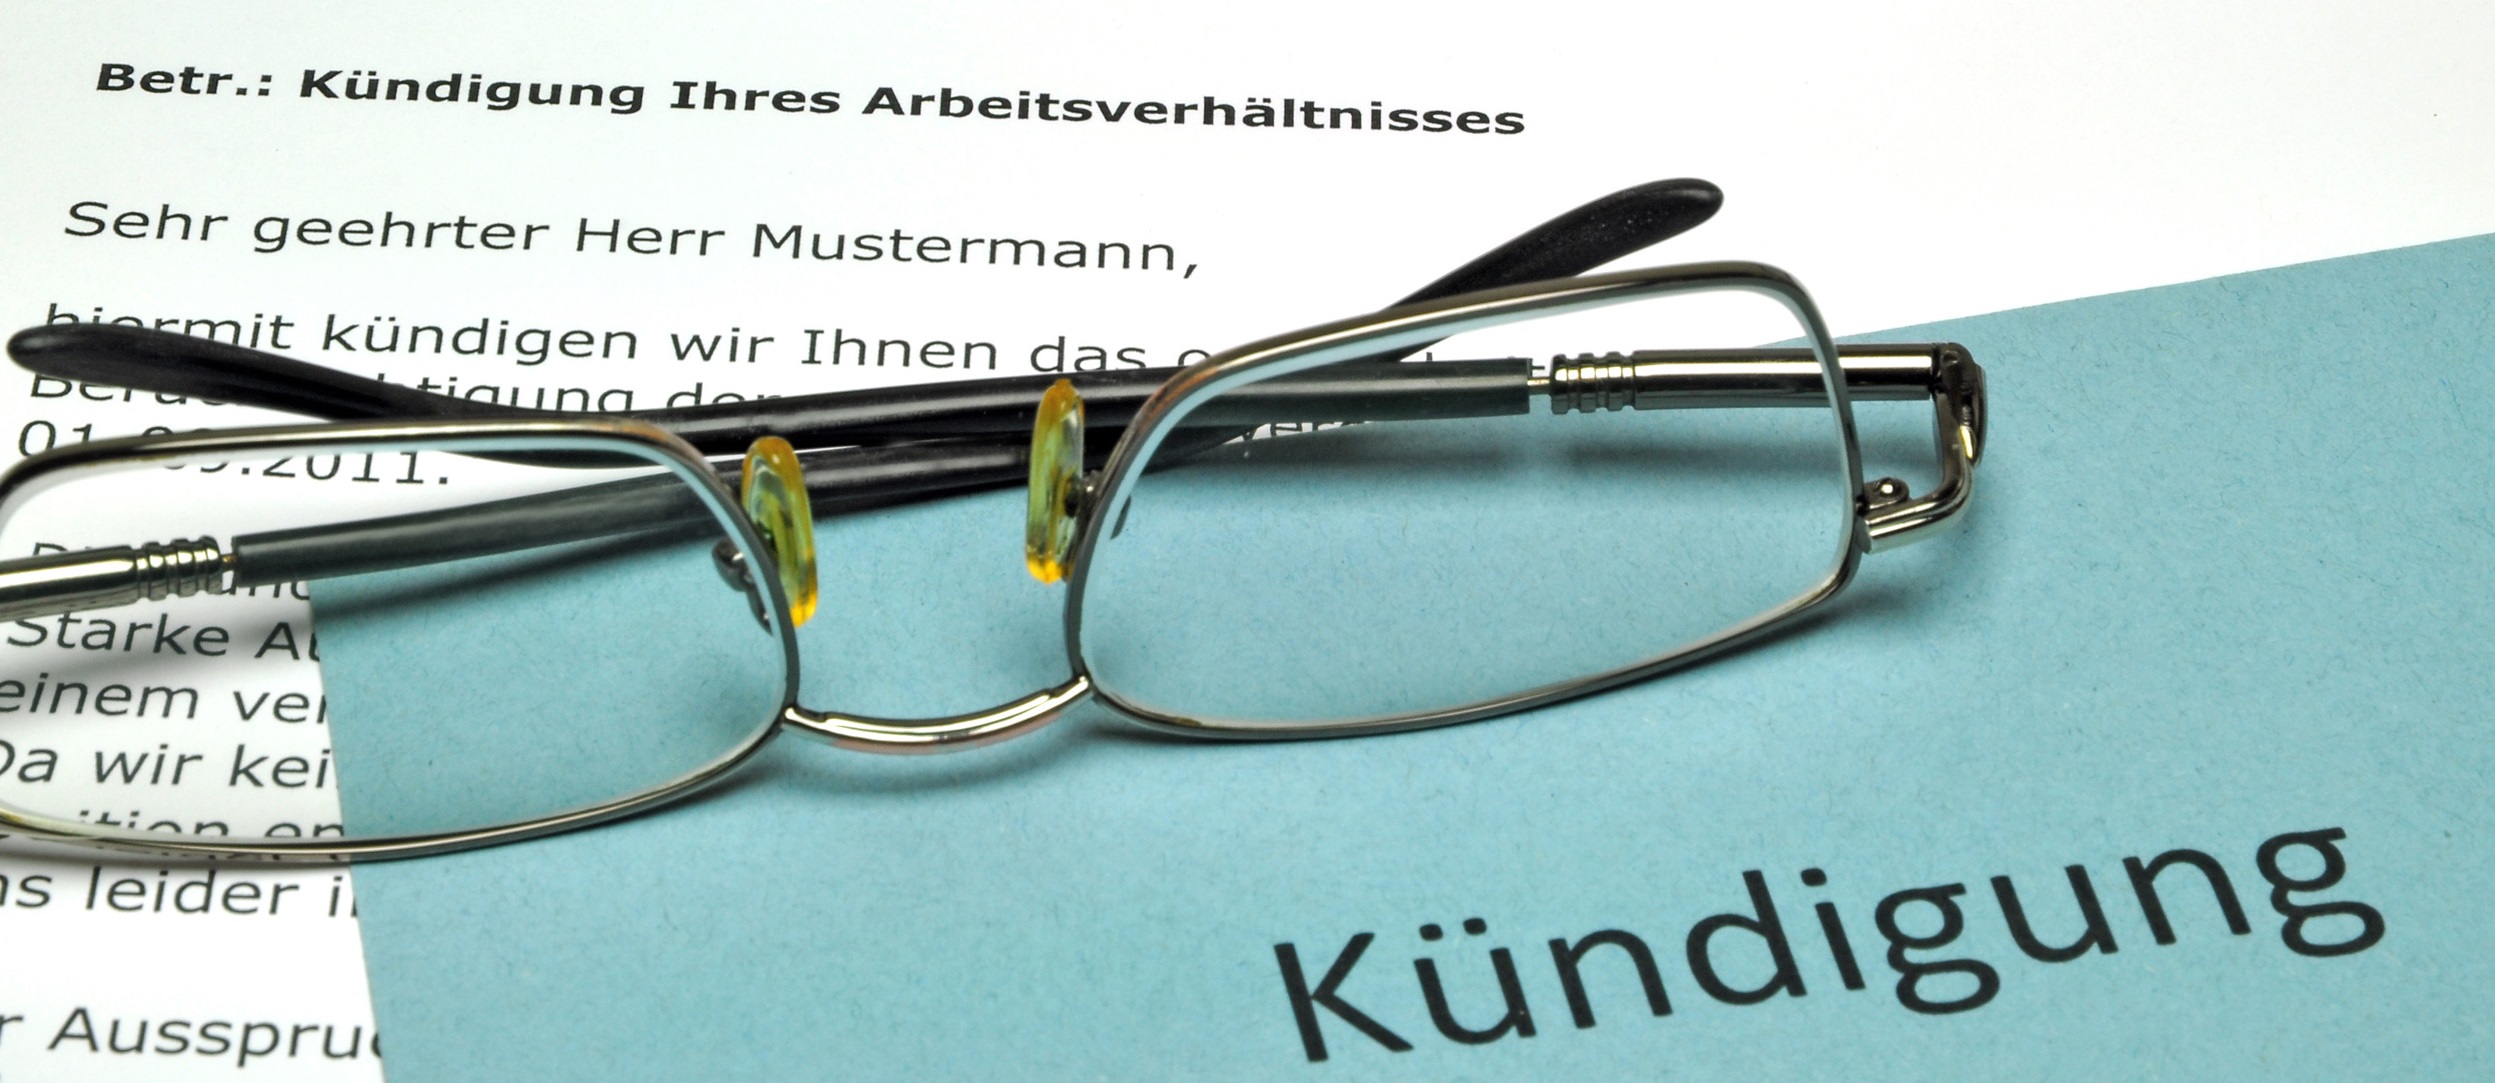 Arbeitsrecht in Berlin Köpenick Brille mit Dokument